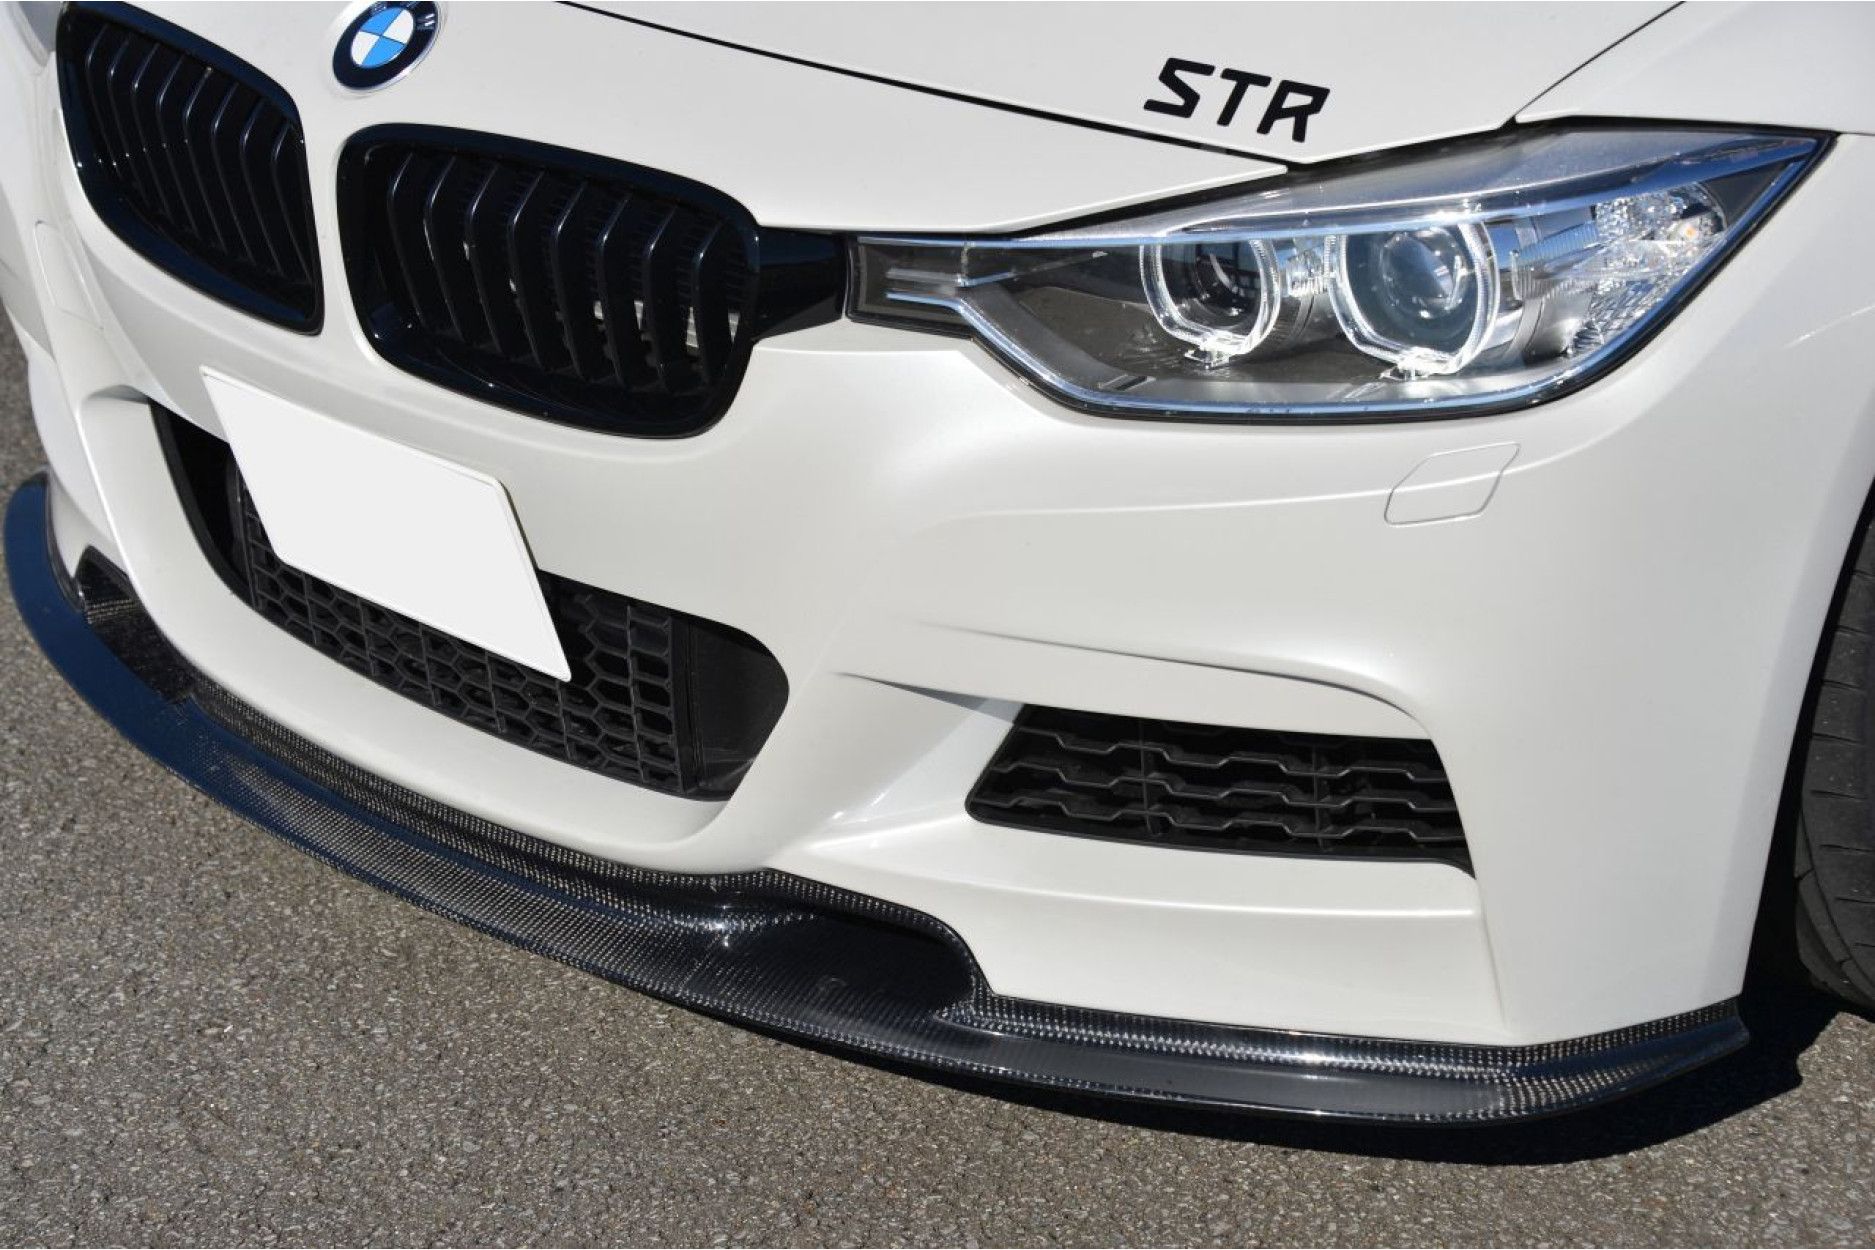 Varis Carbon Frontlippe für BMW 3er F30 mit M-Paket - online kaufen bei CFD